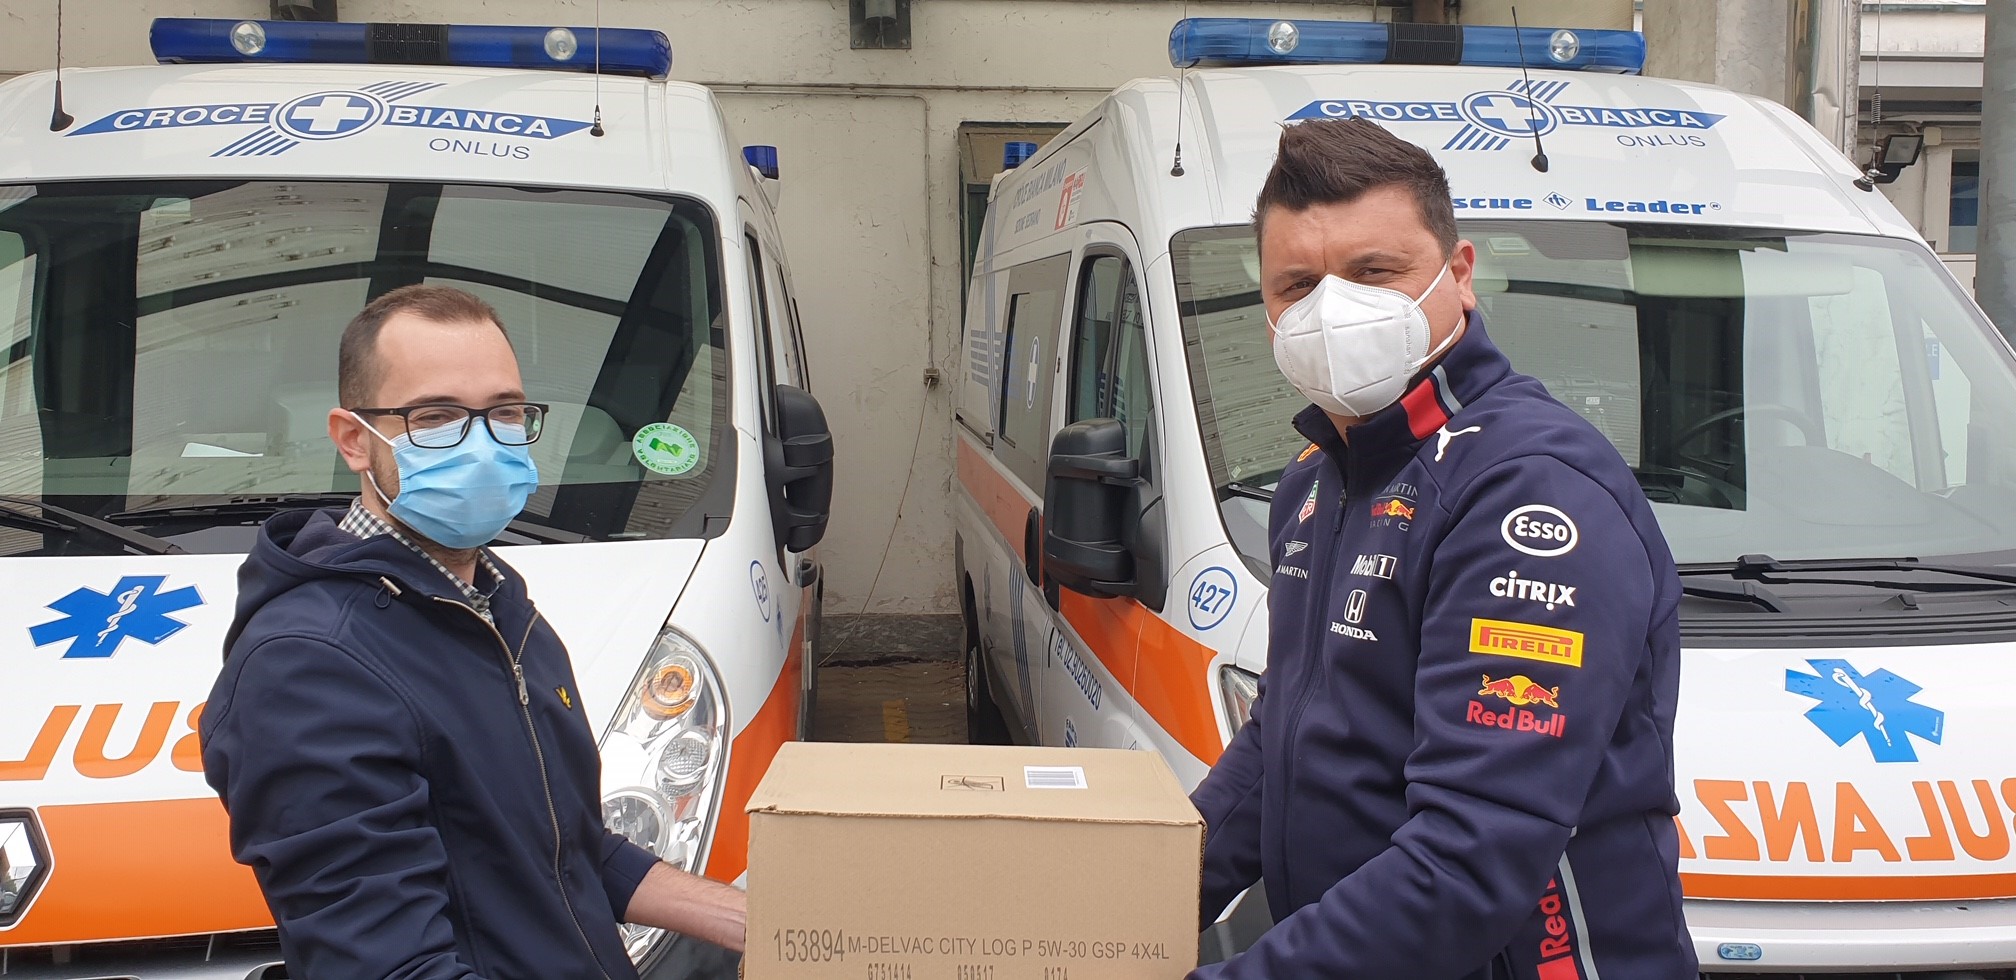 Altra donazione di lubrificanti Mobil DelvacTM che, stavolta, arrivano alla Croce Bianca Milano – Sezione di Sedriano